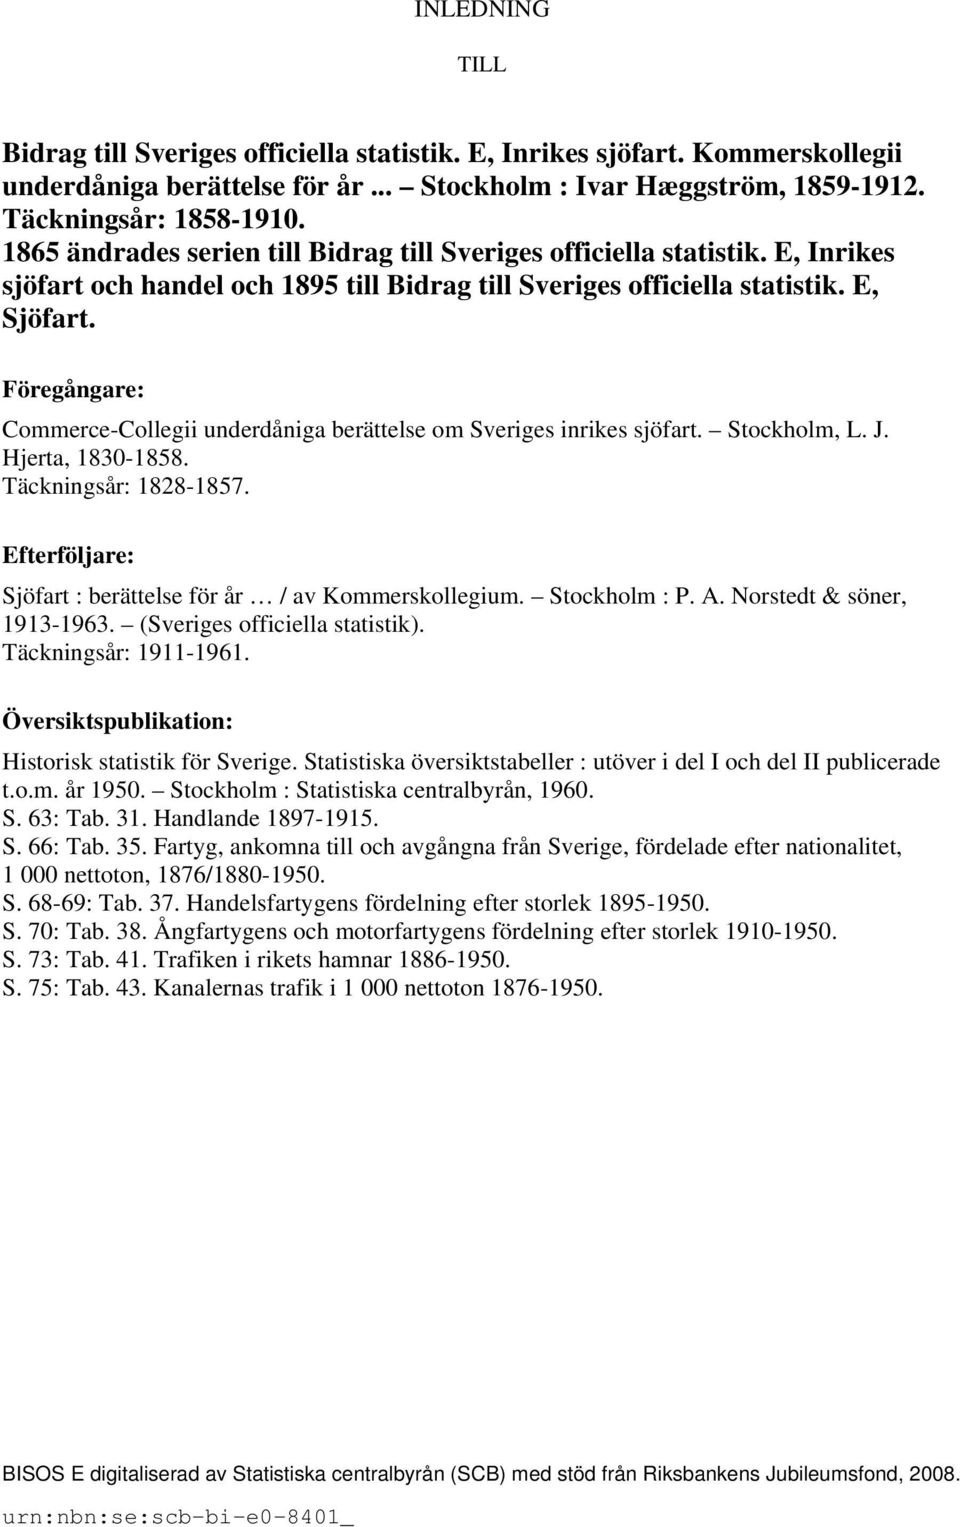 Föregångare: Commerce-Collegii underdåniga berättelse om Sveriges inrikes sjöfart. Stockholm, L. J. Hjerta, 1830-1858. Täckningsår: 1828-1857.